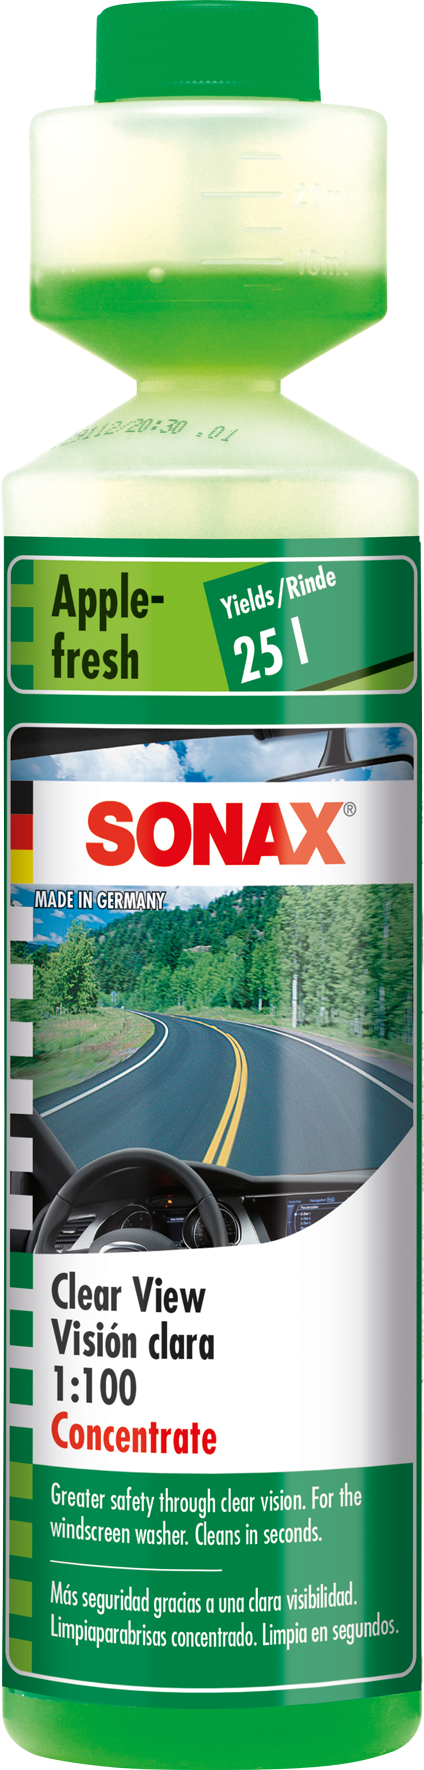 Descarga de imágenes de productos - SONAX Media